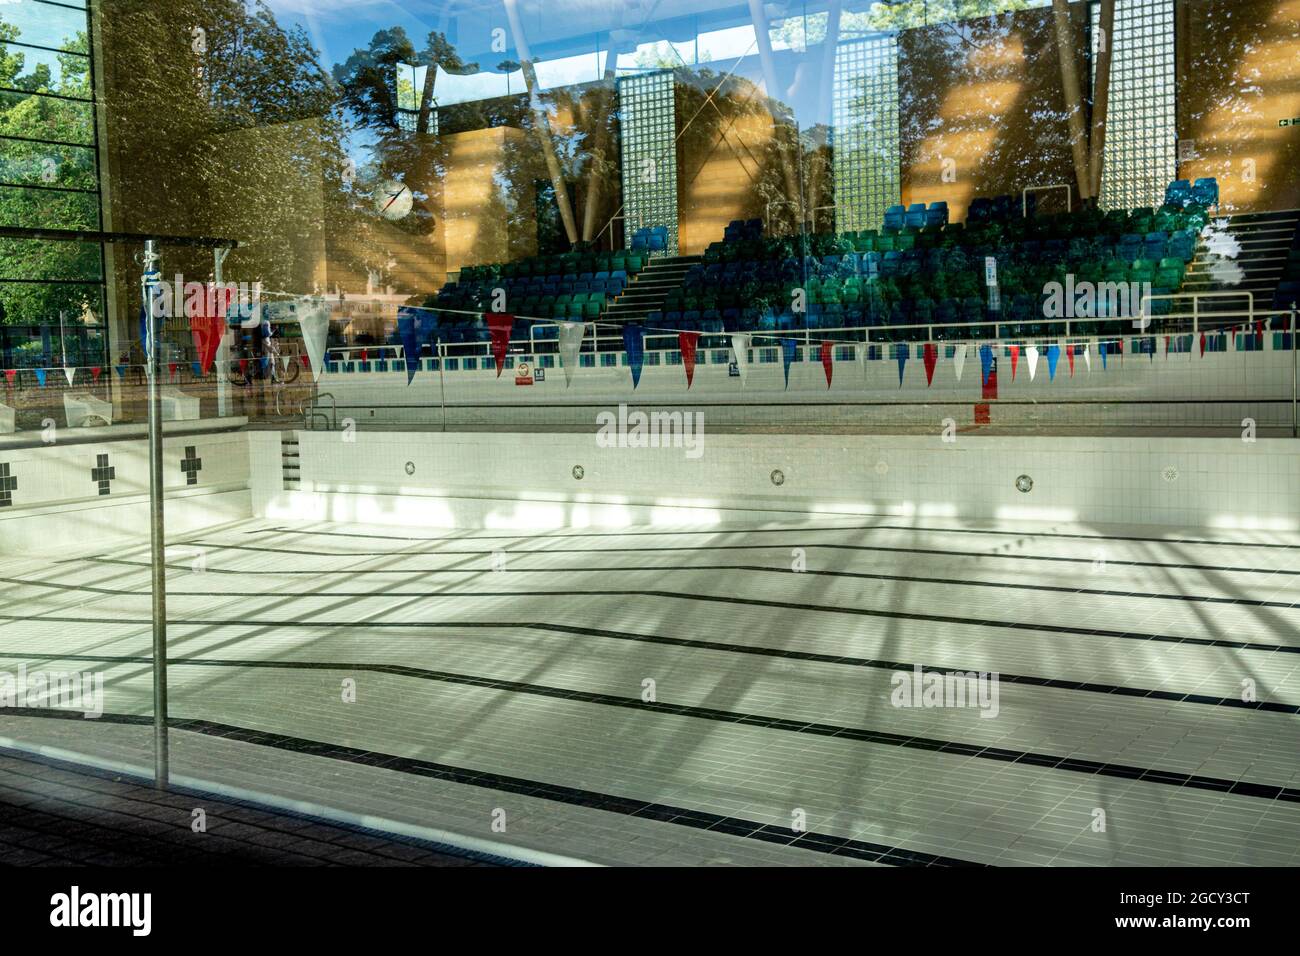 Während der Covid-19-Pandemie wurde das Schwimmbad Parkside von Wasser geleert und für die Öffentlichkeit geschlossen. Cambridge, Großbritannien Stockfoto